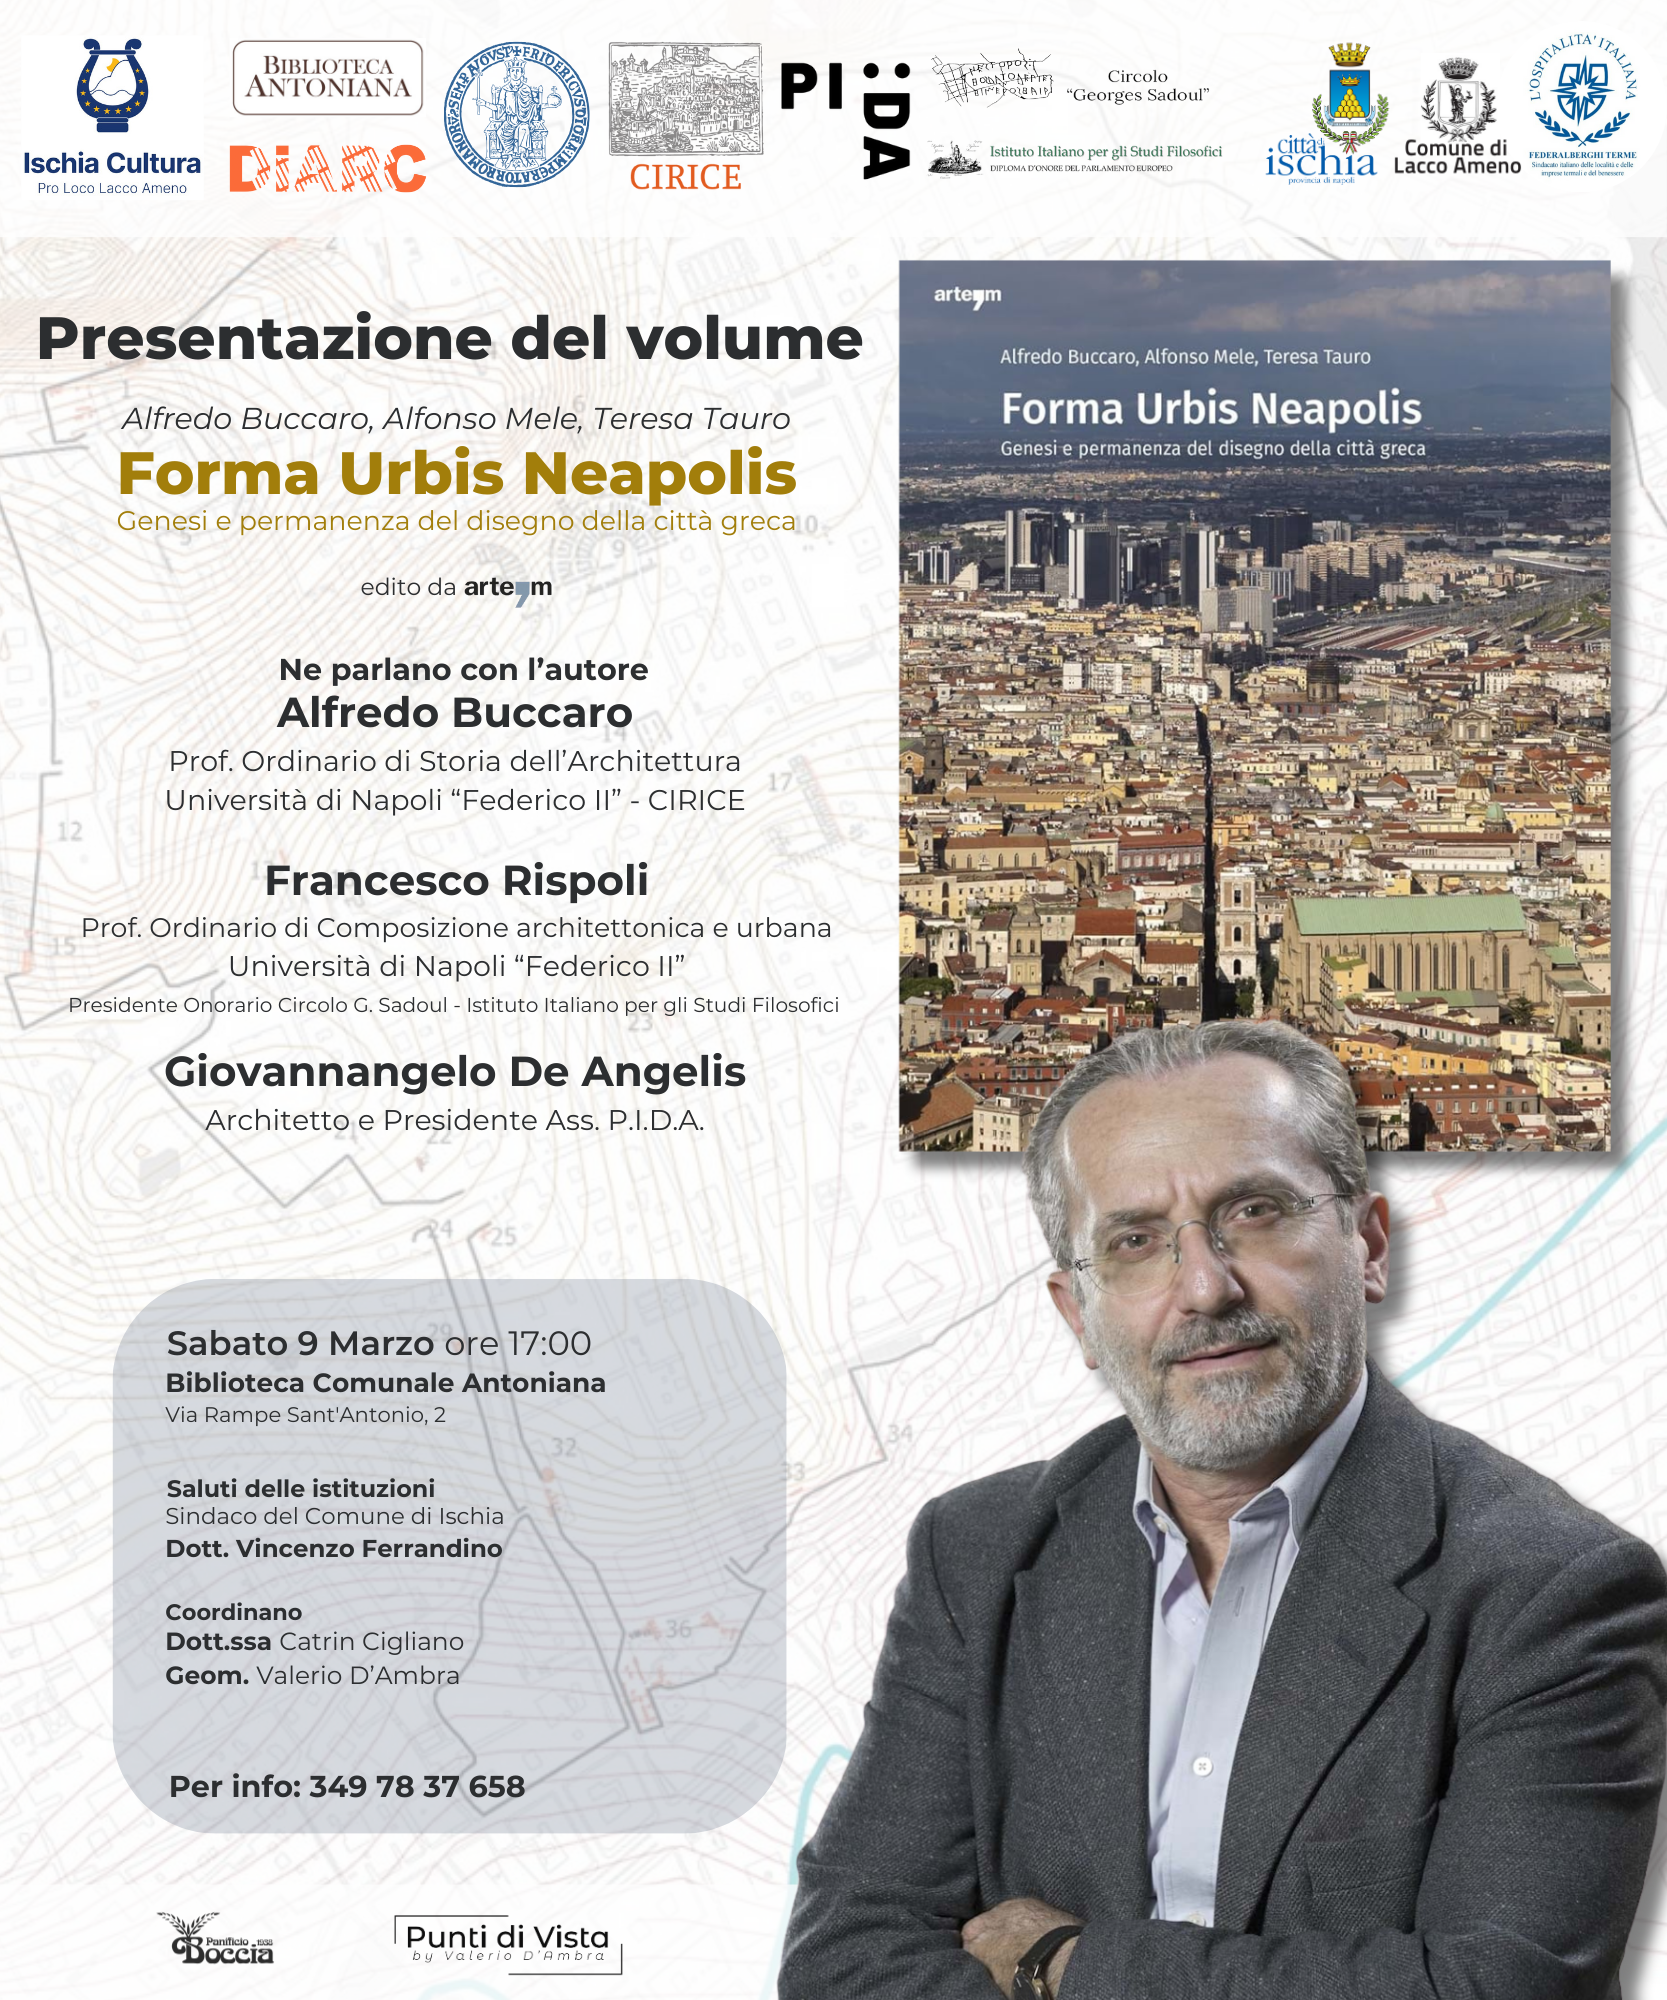 Presentazione del volume "Forma urbis neapolis" 